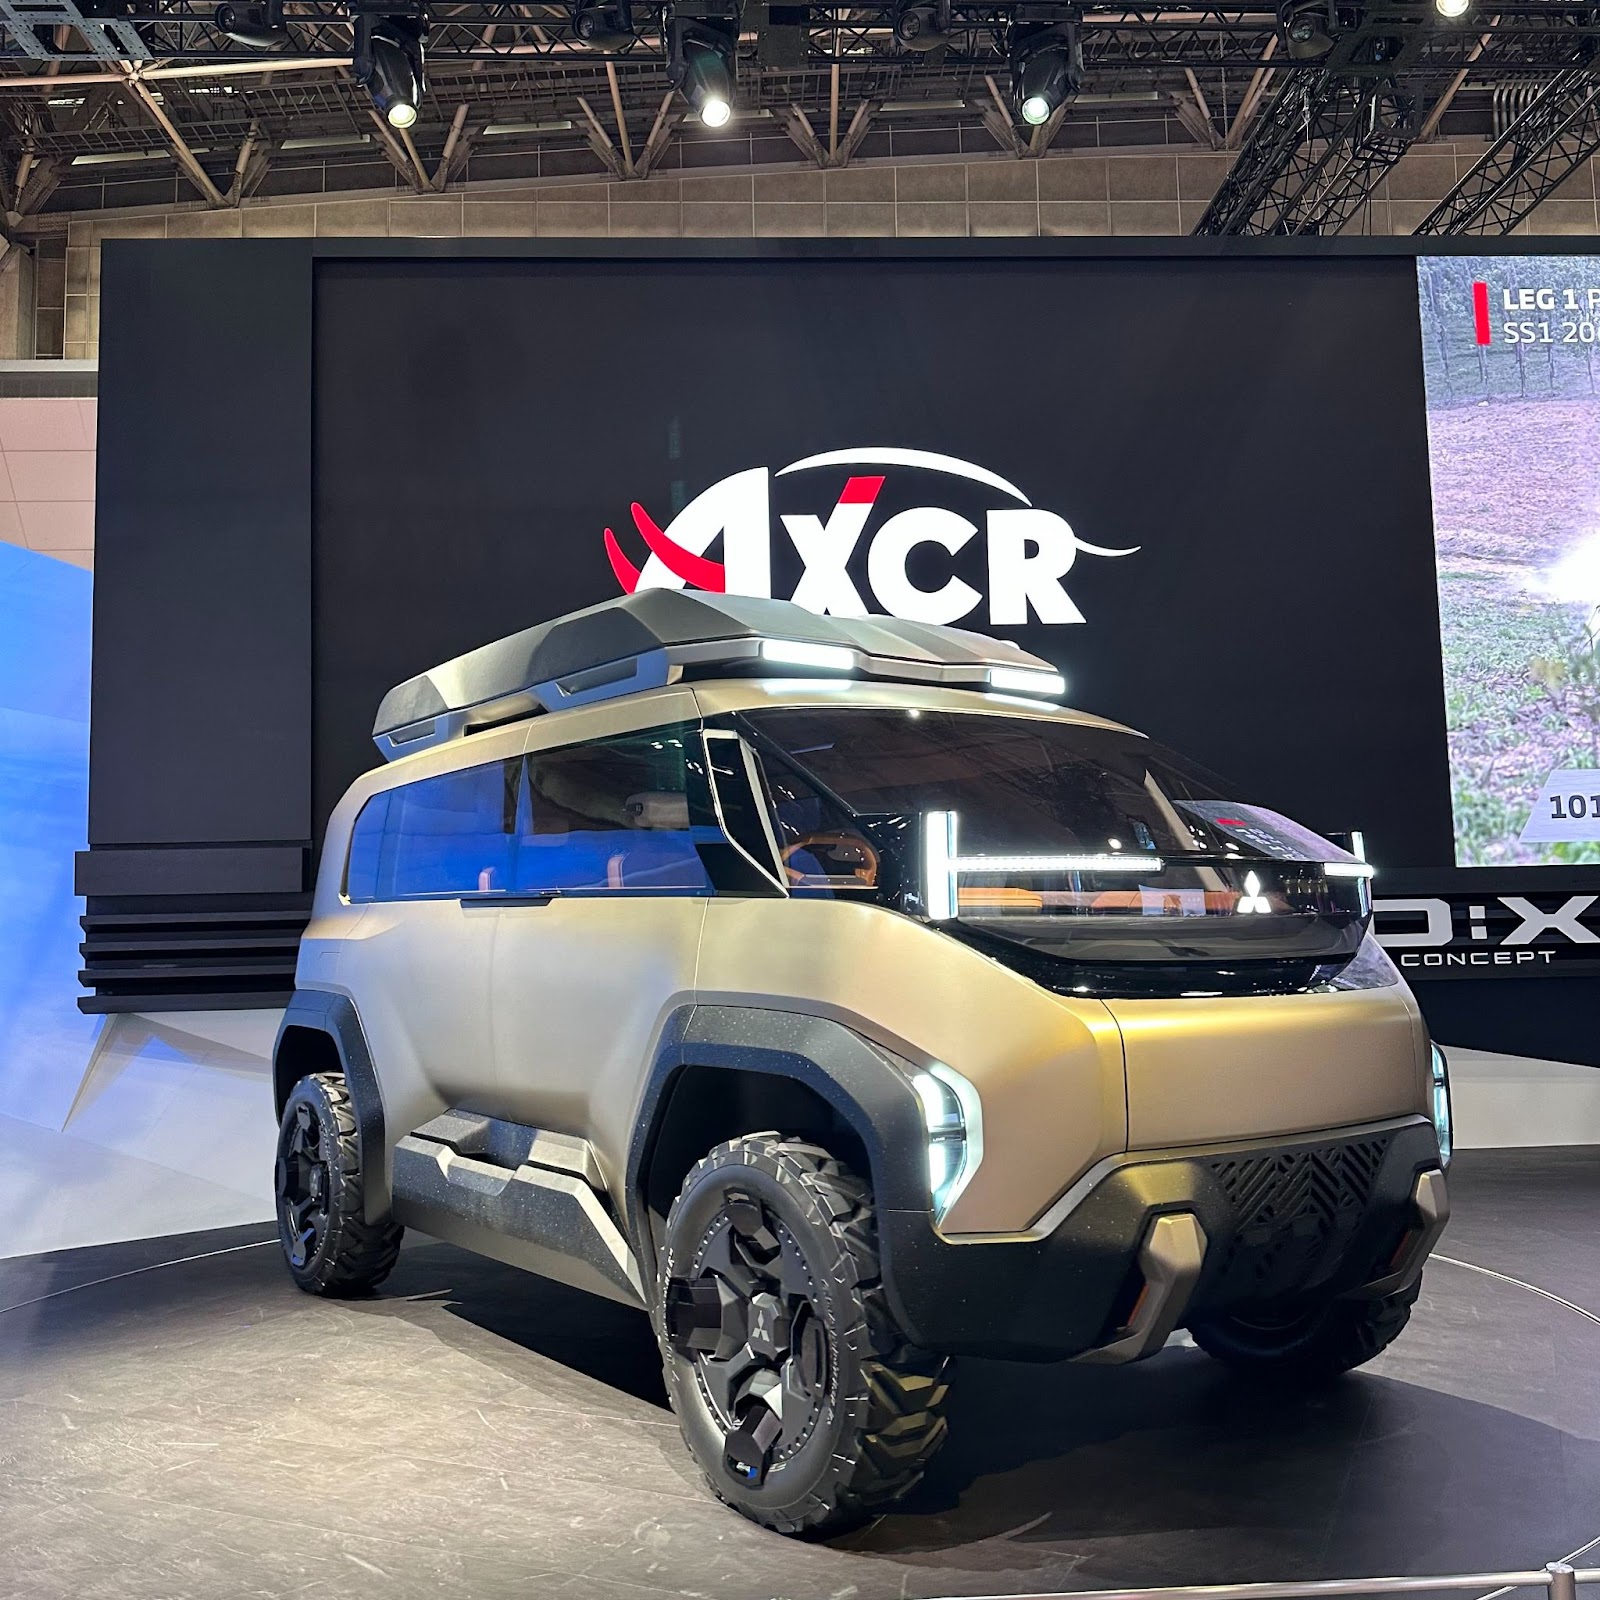 Mitsubishi D:X Concept